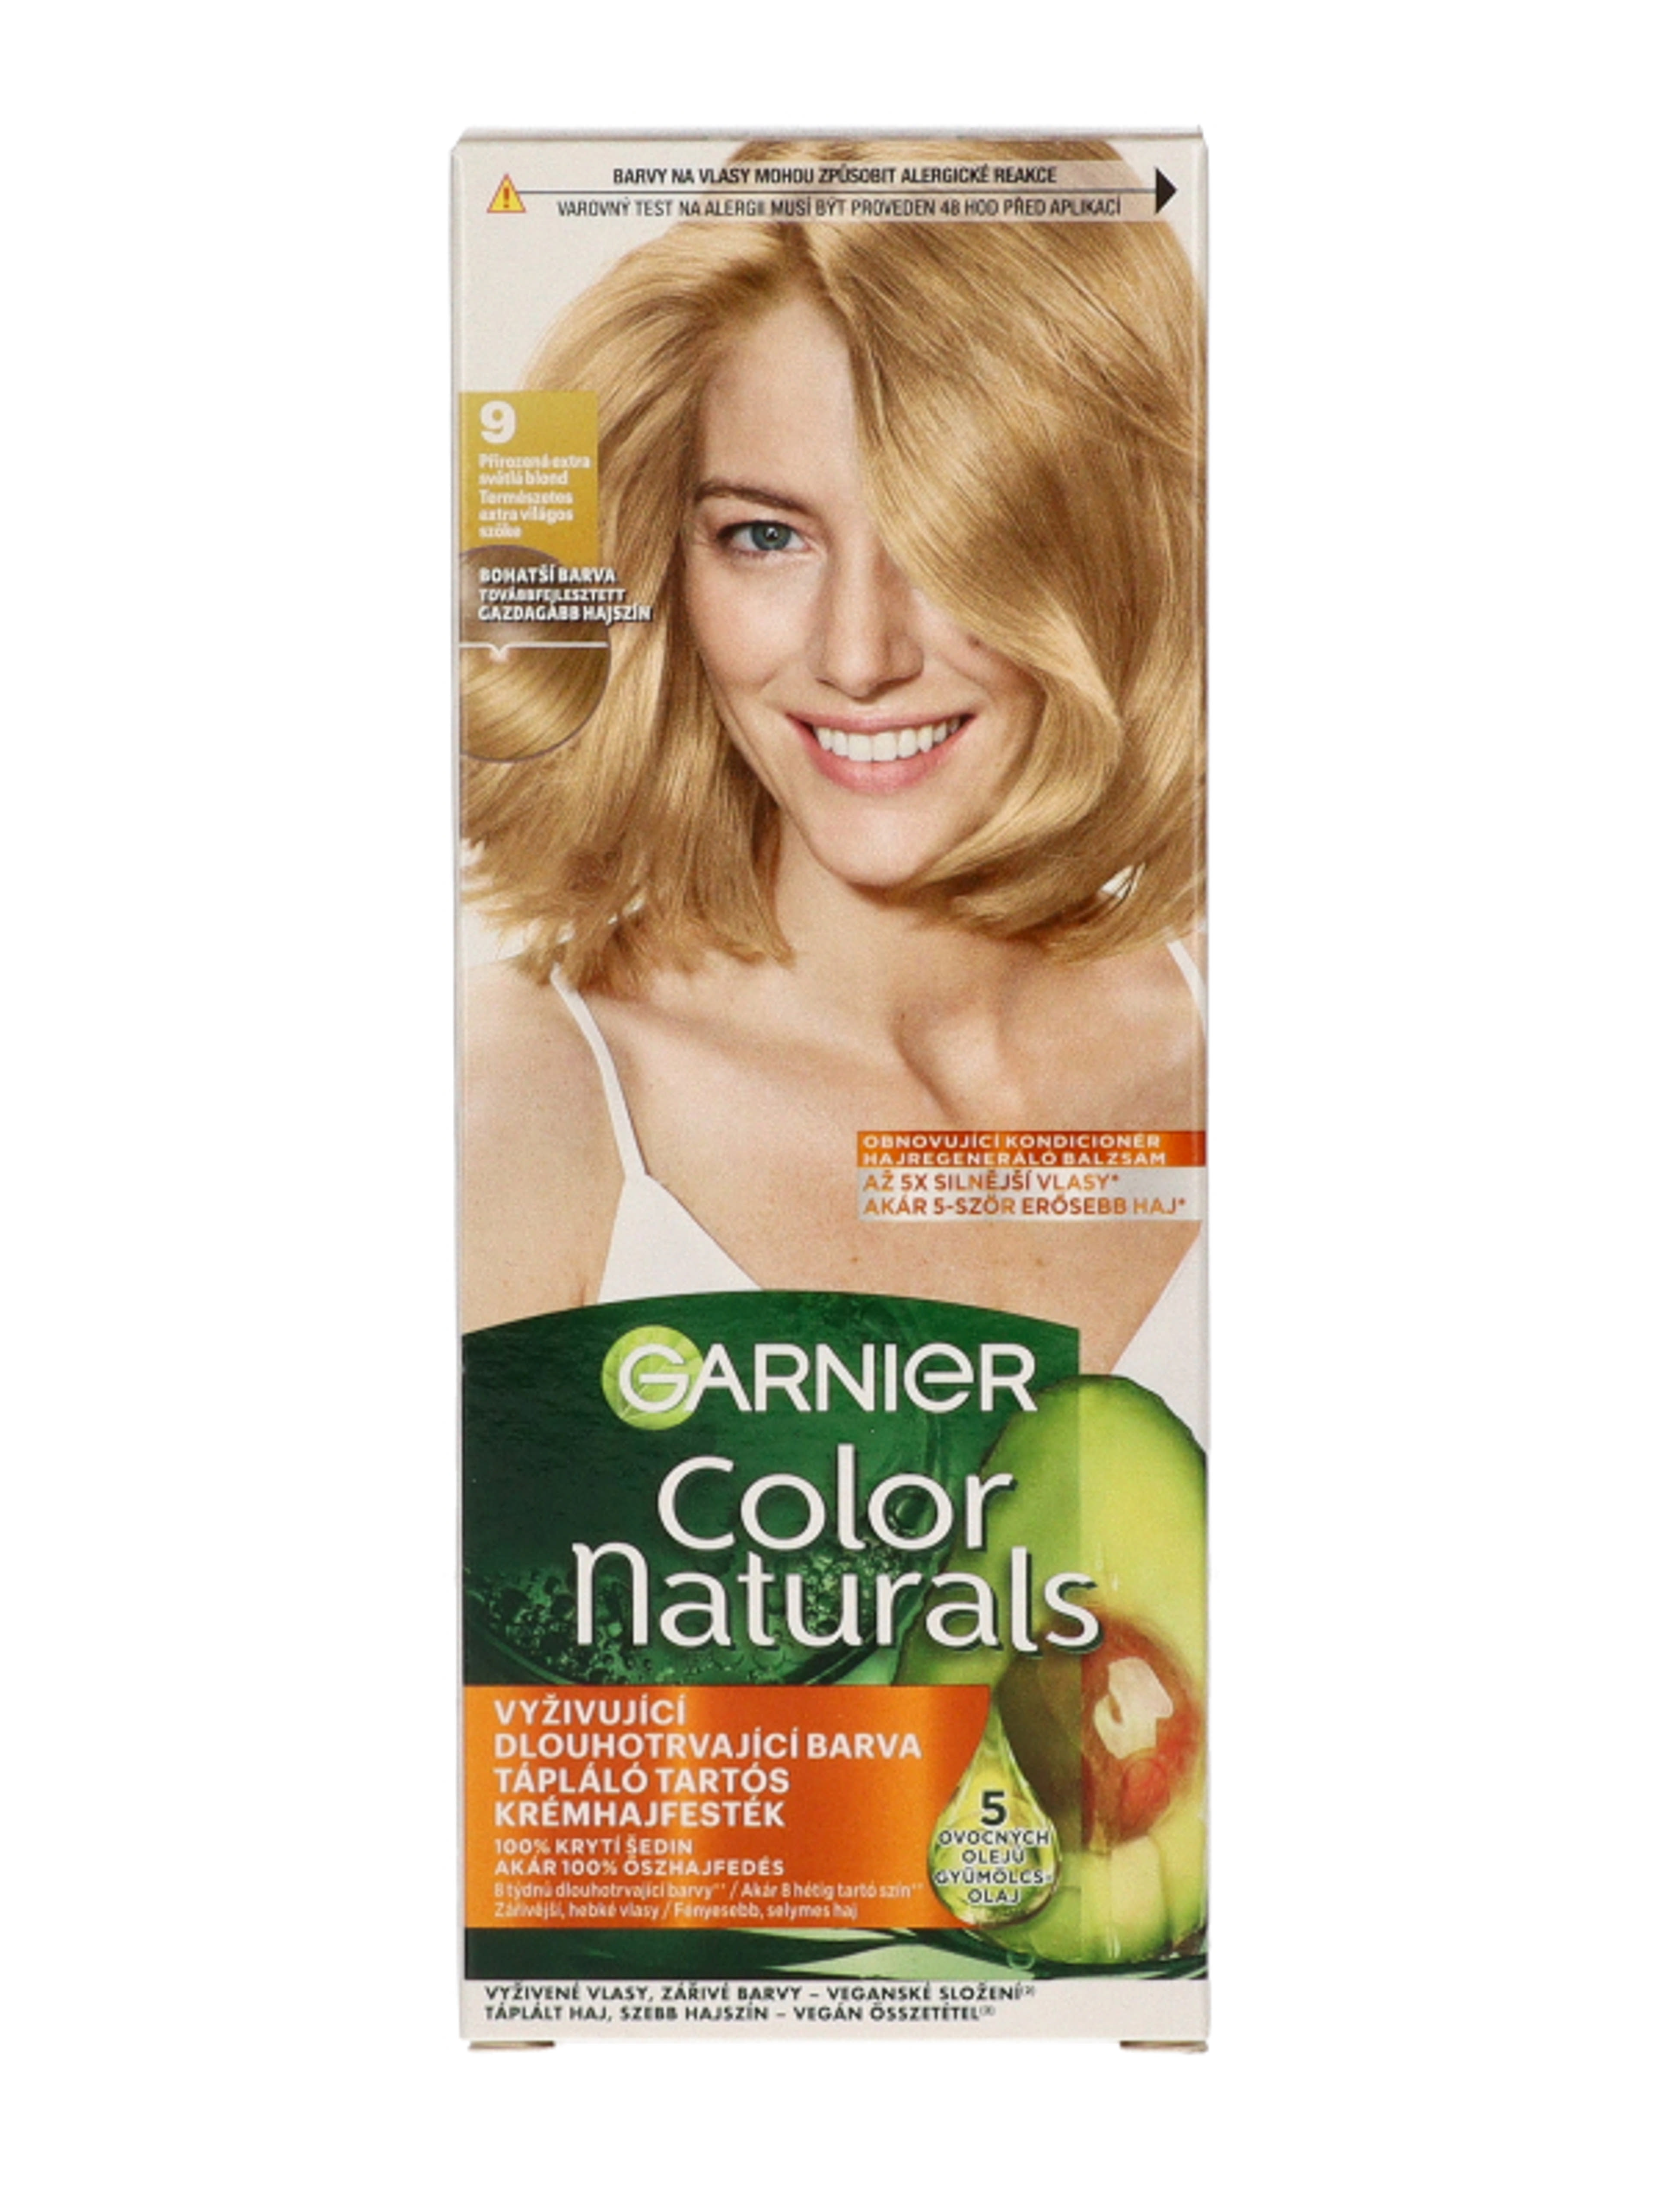 Garnier Color Naturals tartós hajfesték /9 extra light blonde - 1 db-1